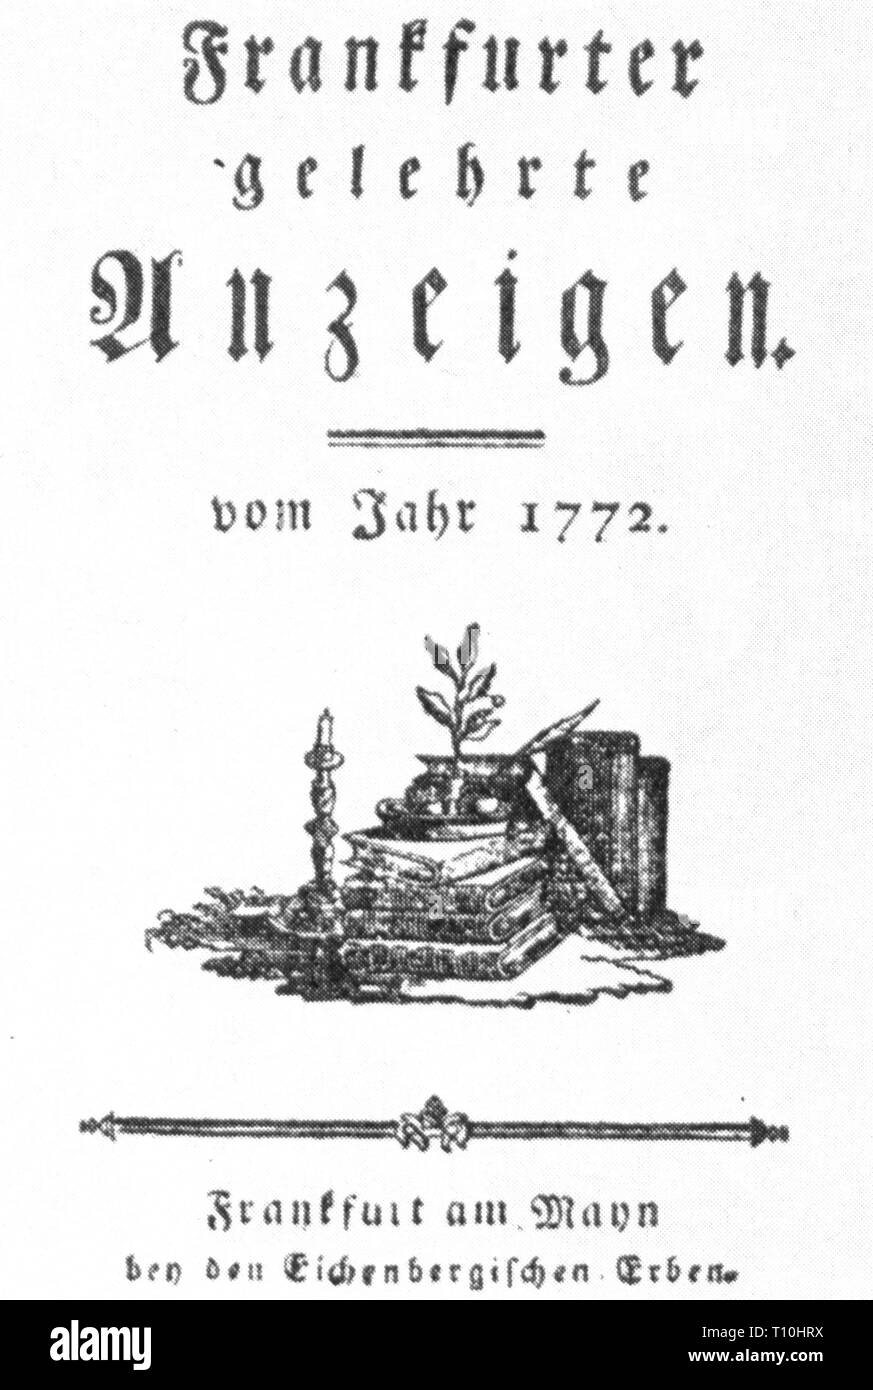 Presse/médias, magazines, 'Frankfurter gelehrte Anzeigen', page de titre, Francfort, 1772, copyright de l'artiste n'a pas à être effacée Banque D'Images